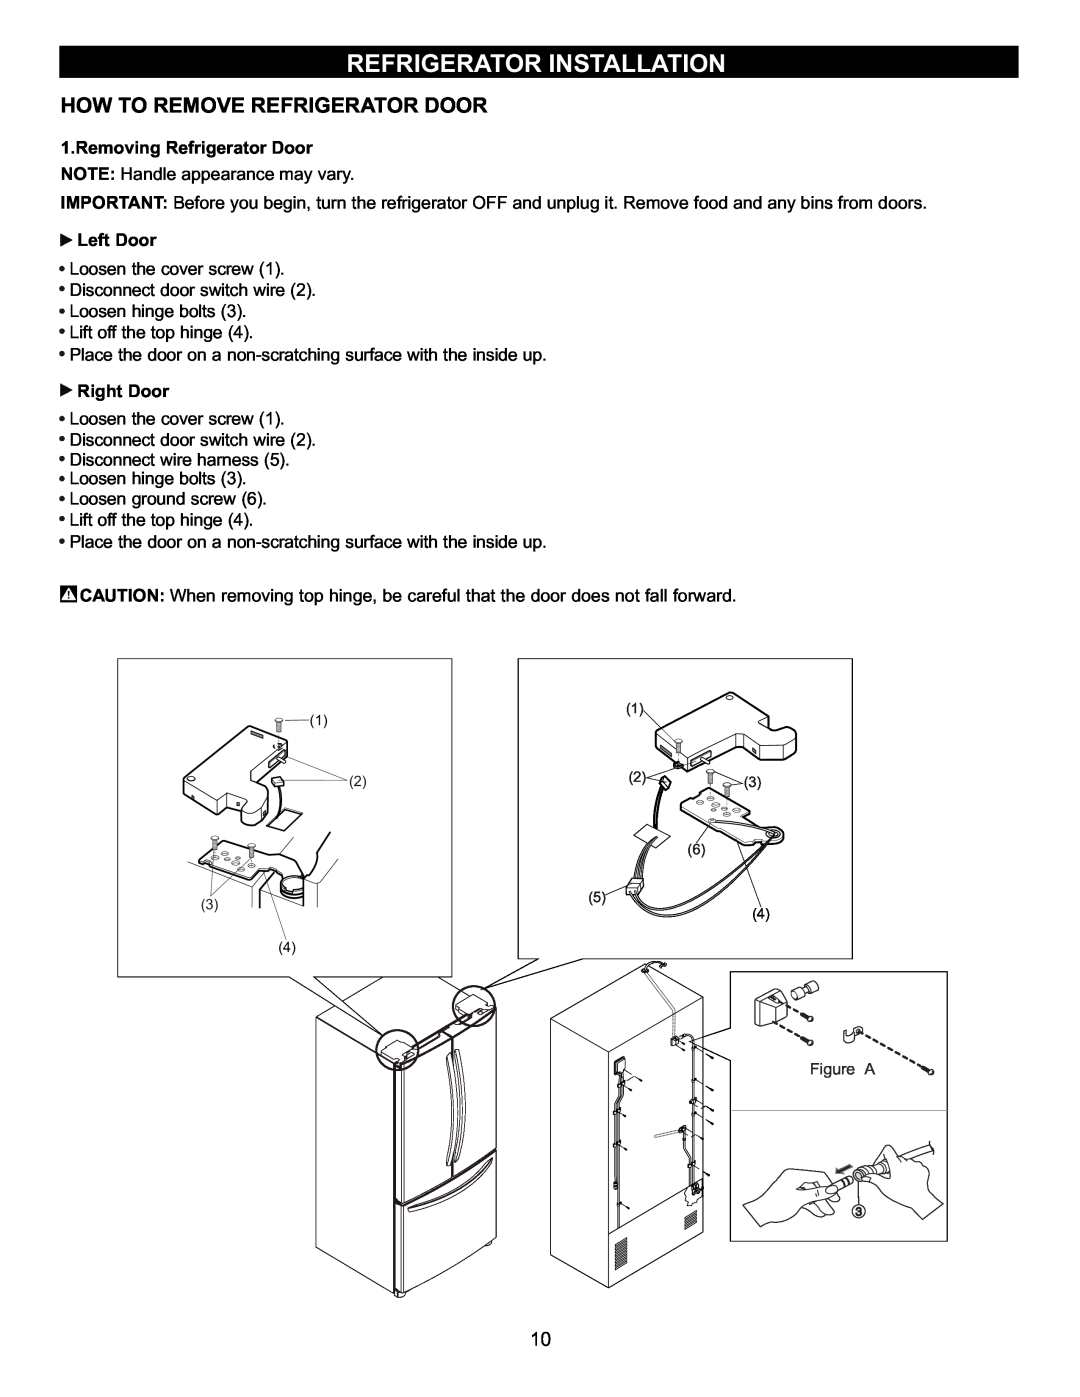 LG Electronics LFC23760 owner manual How To Remove Refrigerator Door, Refrigerator Installation, Left Door, Right Door 